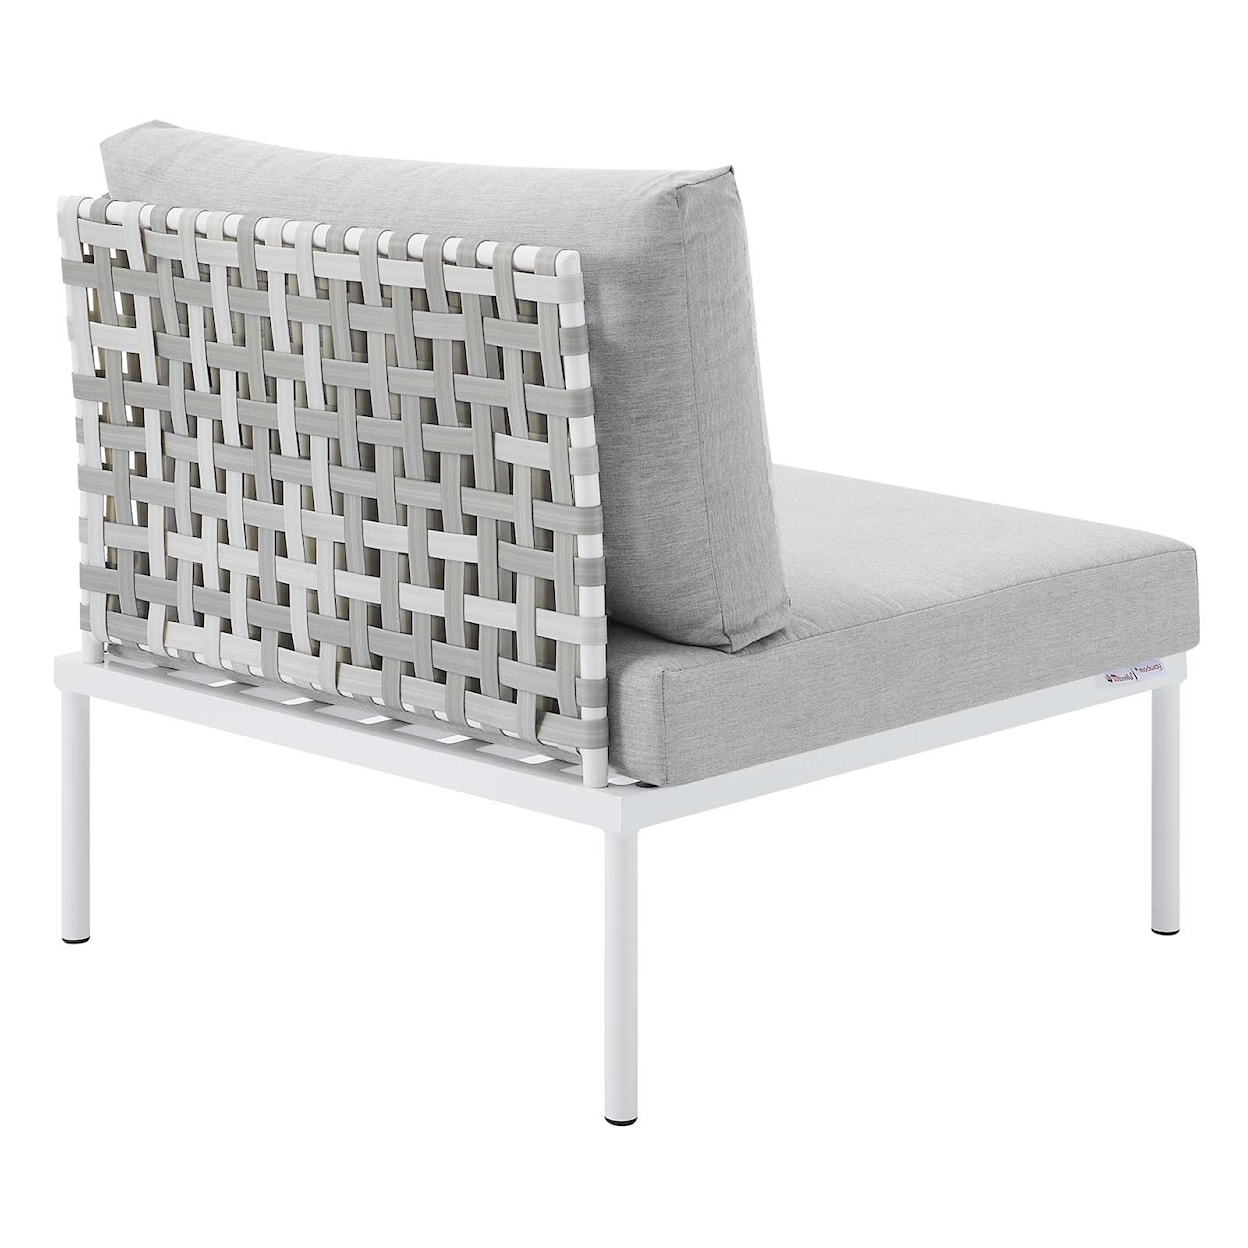 Modway Harmony Outdoor Aluminum Armless Chair